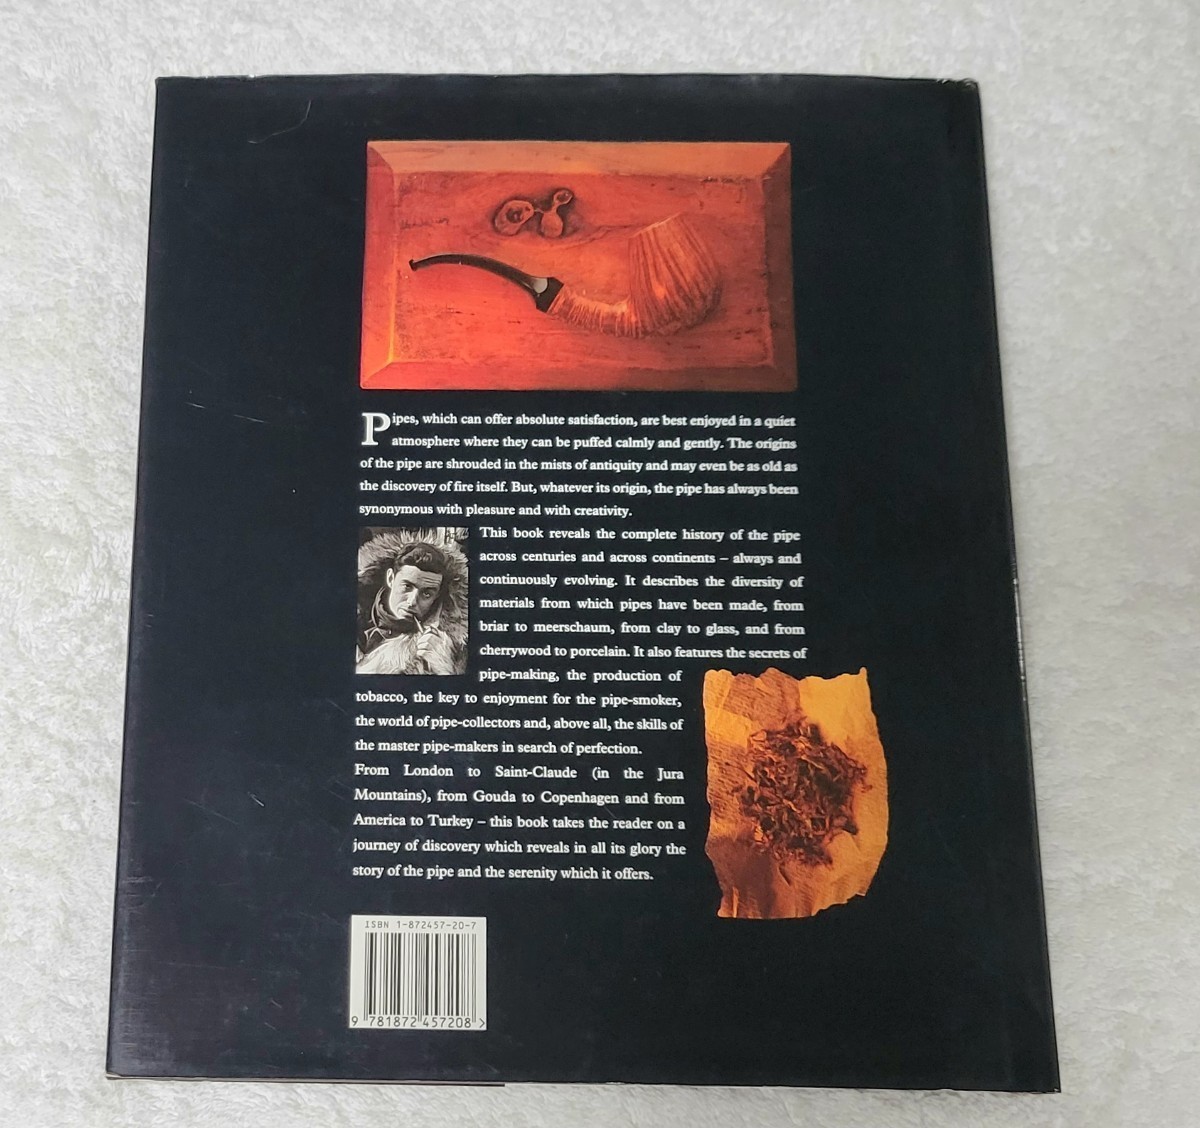 The Illustrated History of the Pipe　パイプの図解された歴史　ハードカバー - 1994　アレクシス・リーバート著 アラン・マヤ_画像2